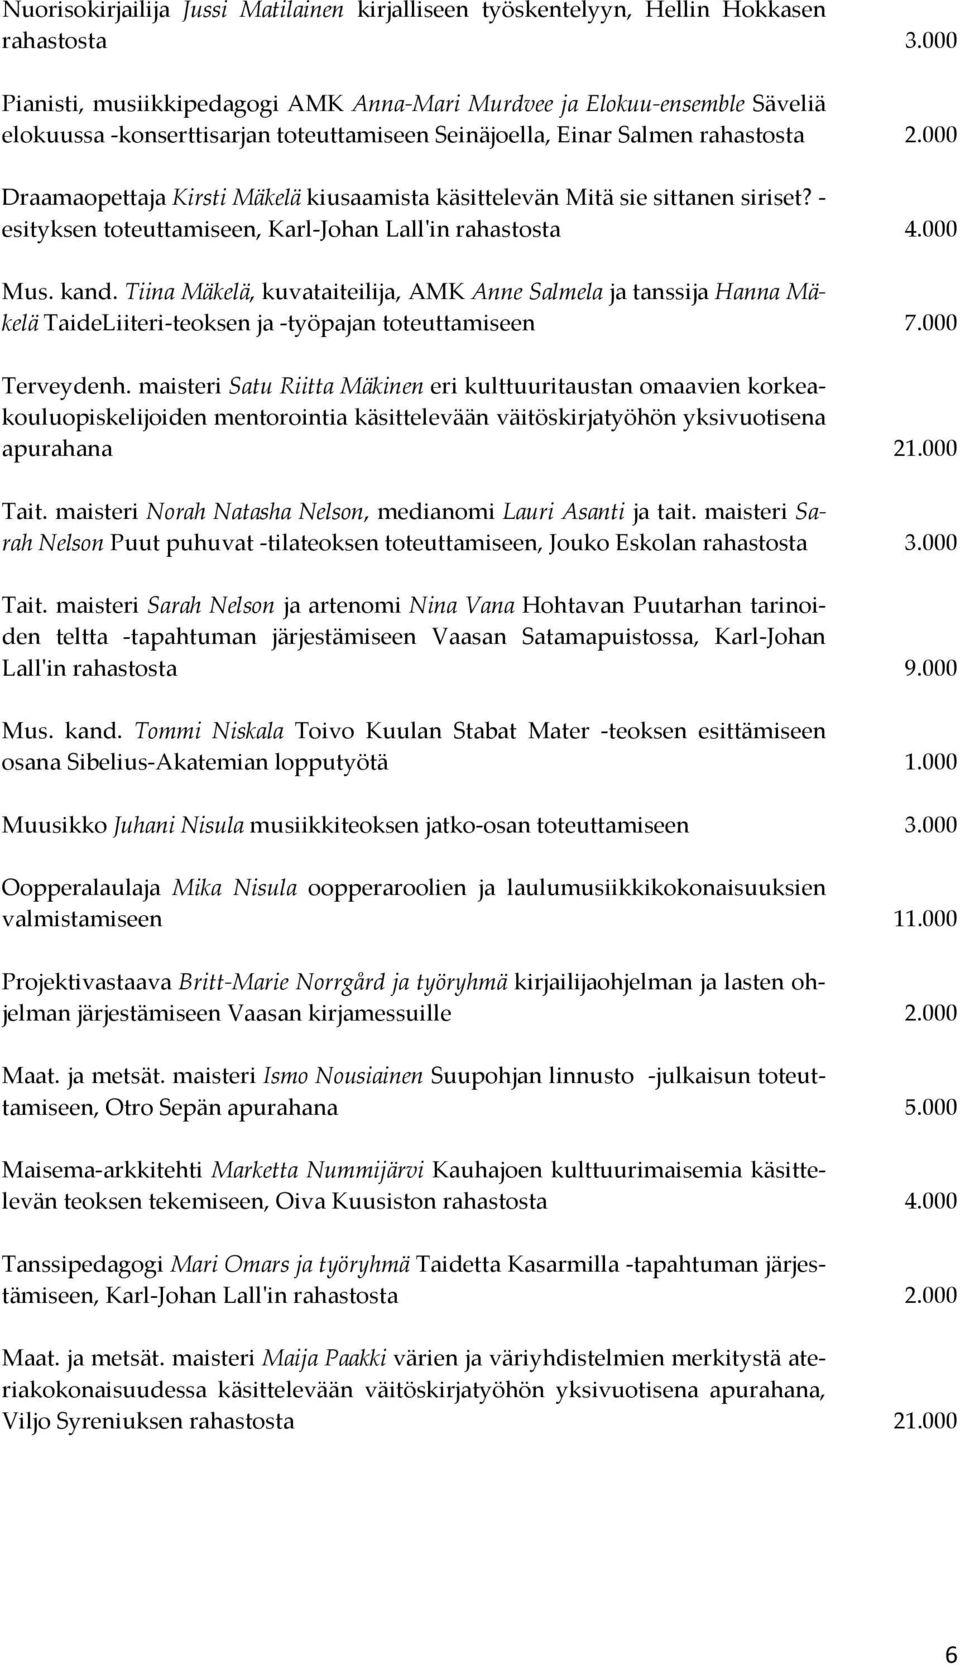 000 Draamaopettaja Kirsti Mäkelä kiusaamista käsittelevän Mitä sie sittanen siriset? - esityksen toteuttamiseen, Karl-Johan Lall'in rahastosta 4.000 Mus. kand.